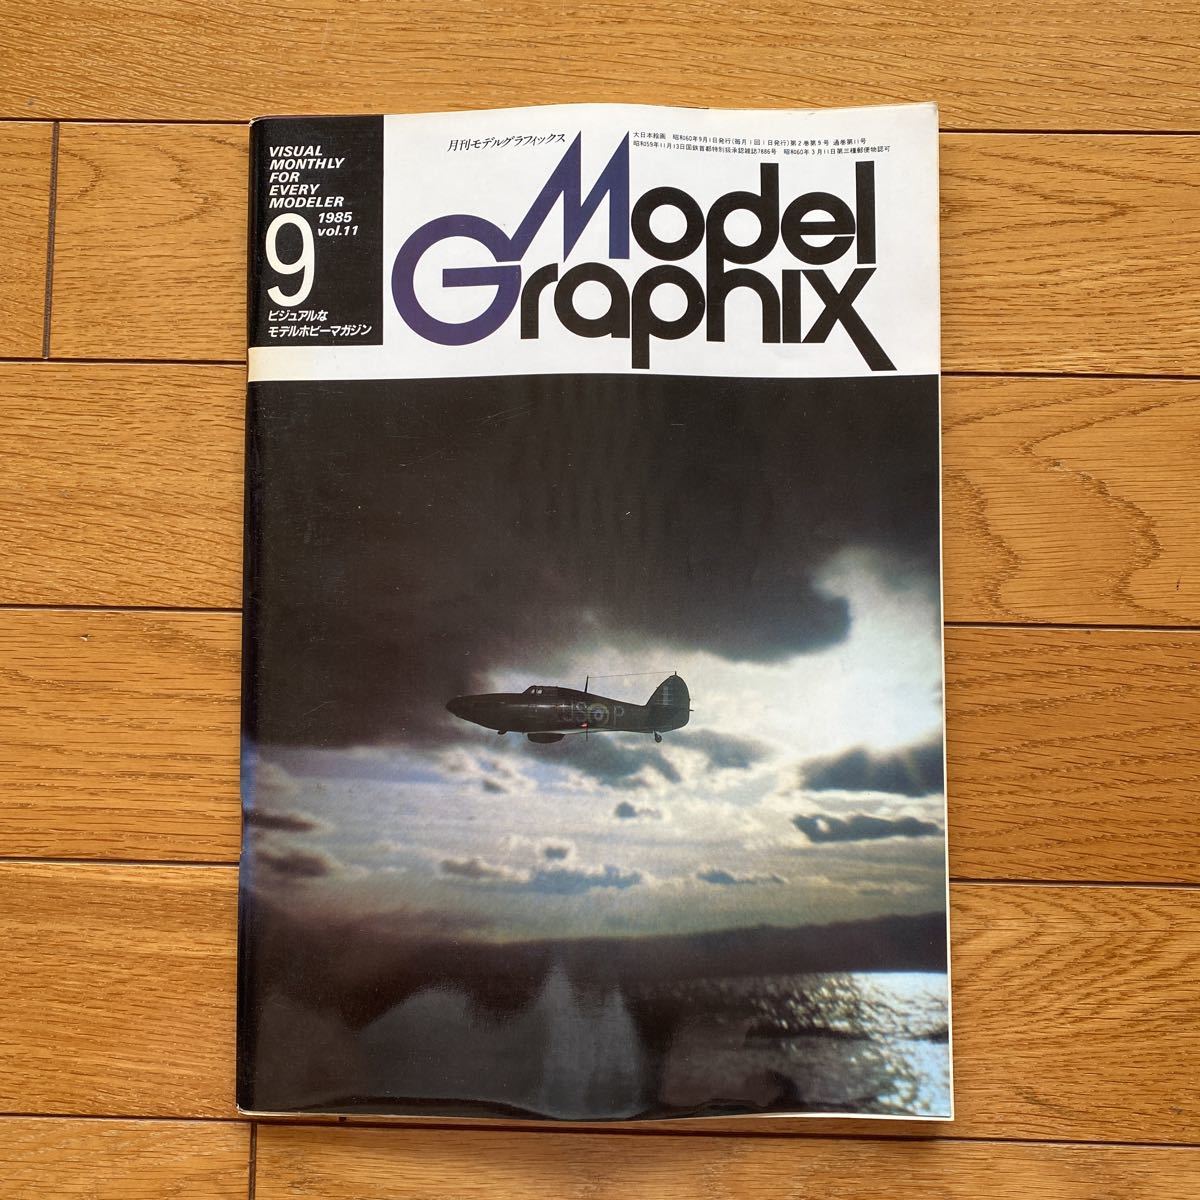 Yahoo!オークション -「モデルグラフィックス 1985」(雑誌) の落札相場 